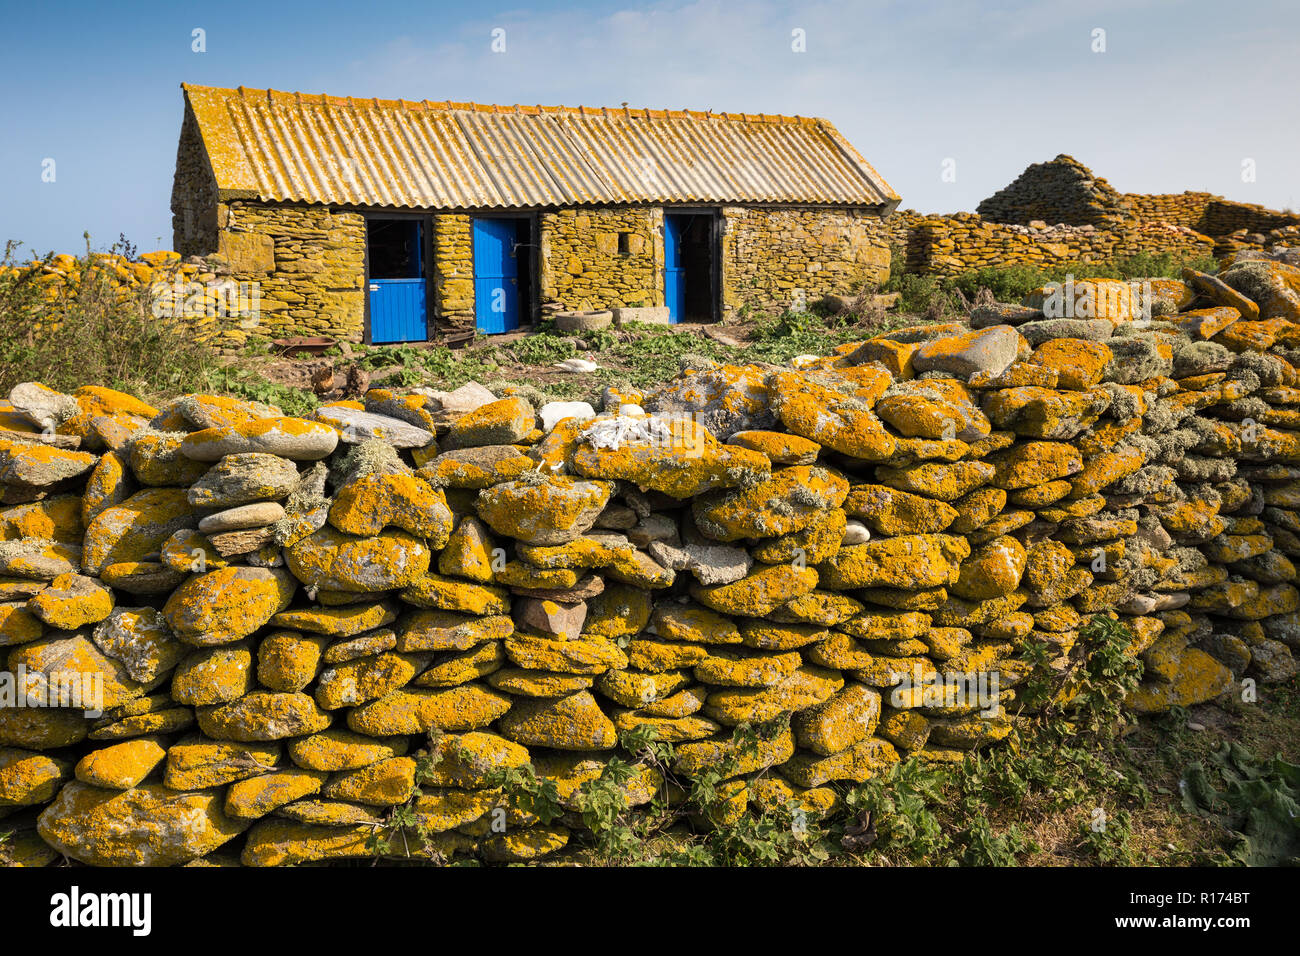 Ancienne ferme en pierre recouvert de lichen jaune dans l'île de Quemenes, Bretagne, France Banque D'Images